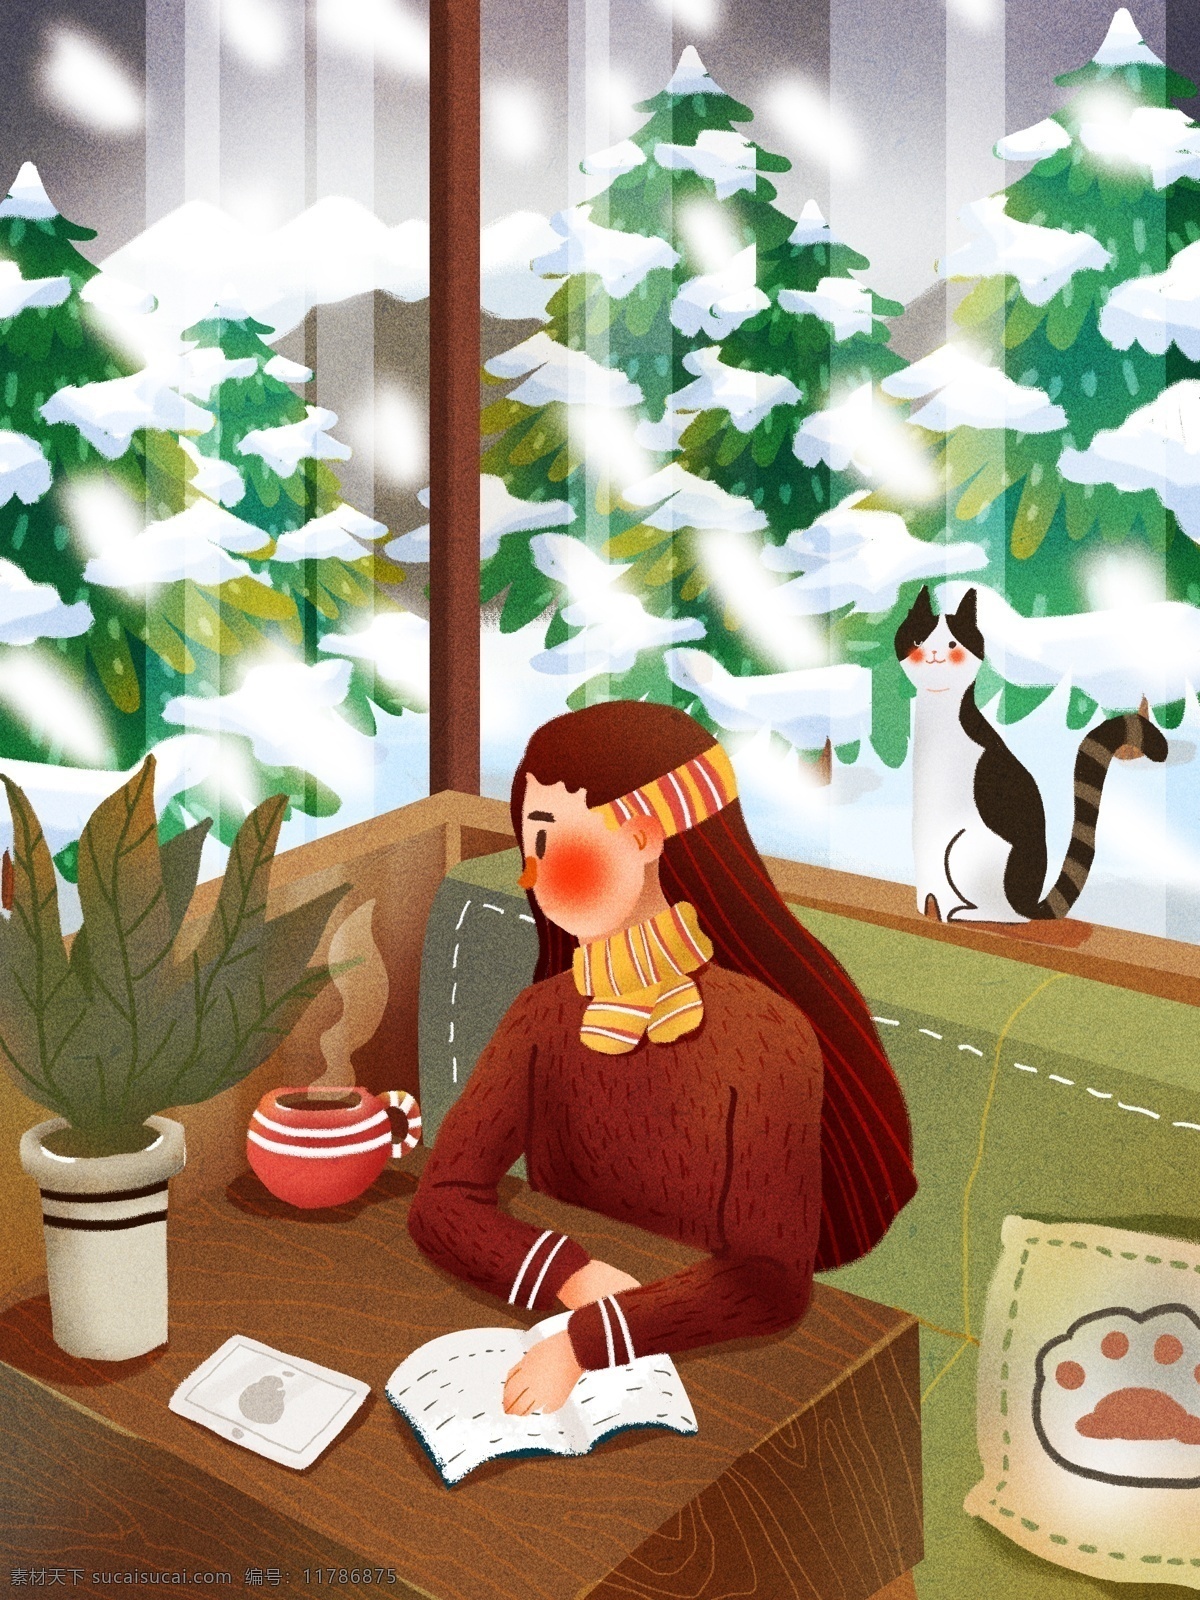 冬天 你好 咖啡 植物 猫咪 少女 雪景 树林 肌理 书本 盆栽 冬天你好 考费 窗外 抱枕